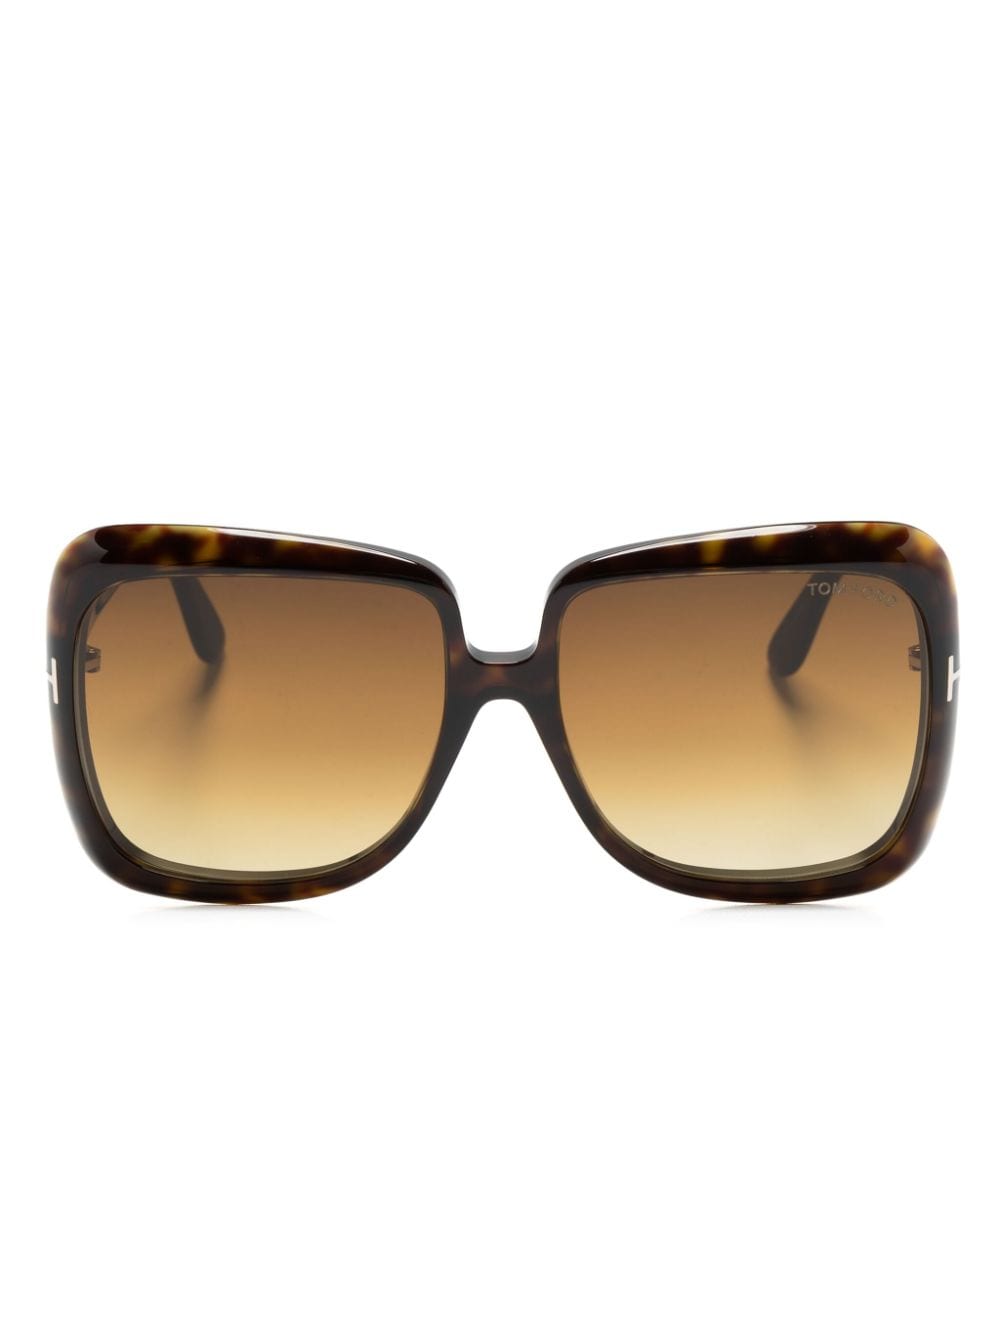 TOM FORD Eyewear Lorelai oversize-frame sunglasses - Brown von TOM FORD Eyewear